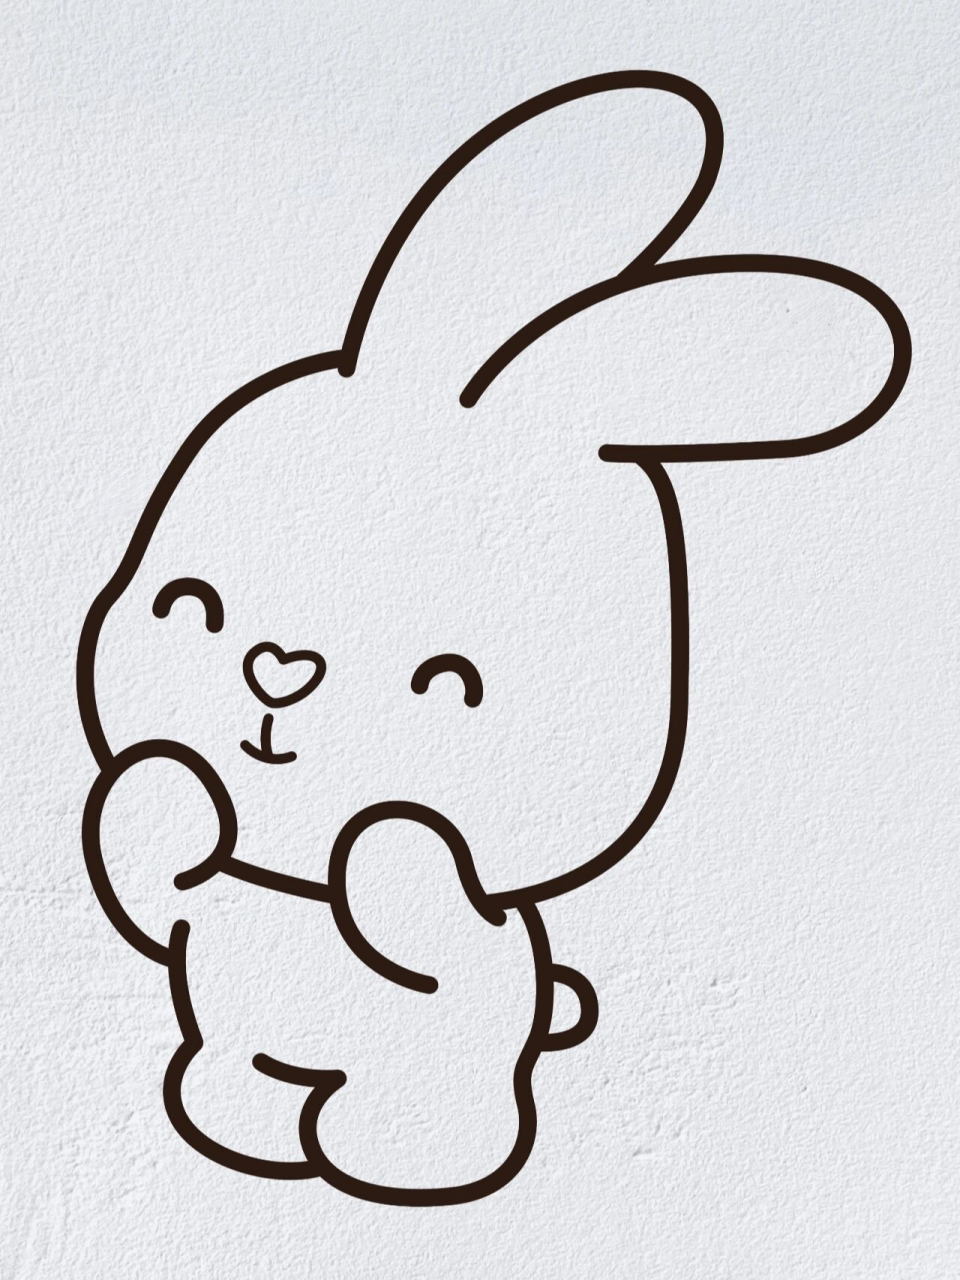 画兔子的简笔画简单图片